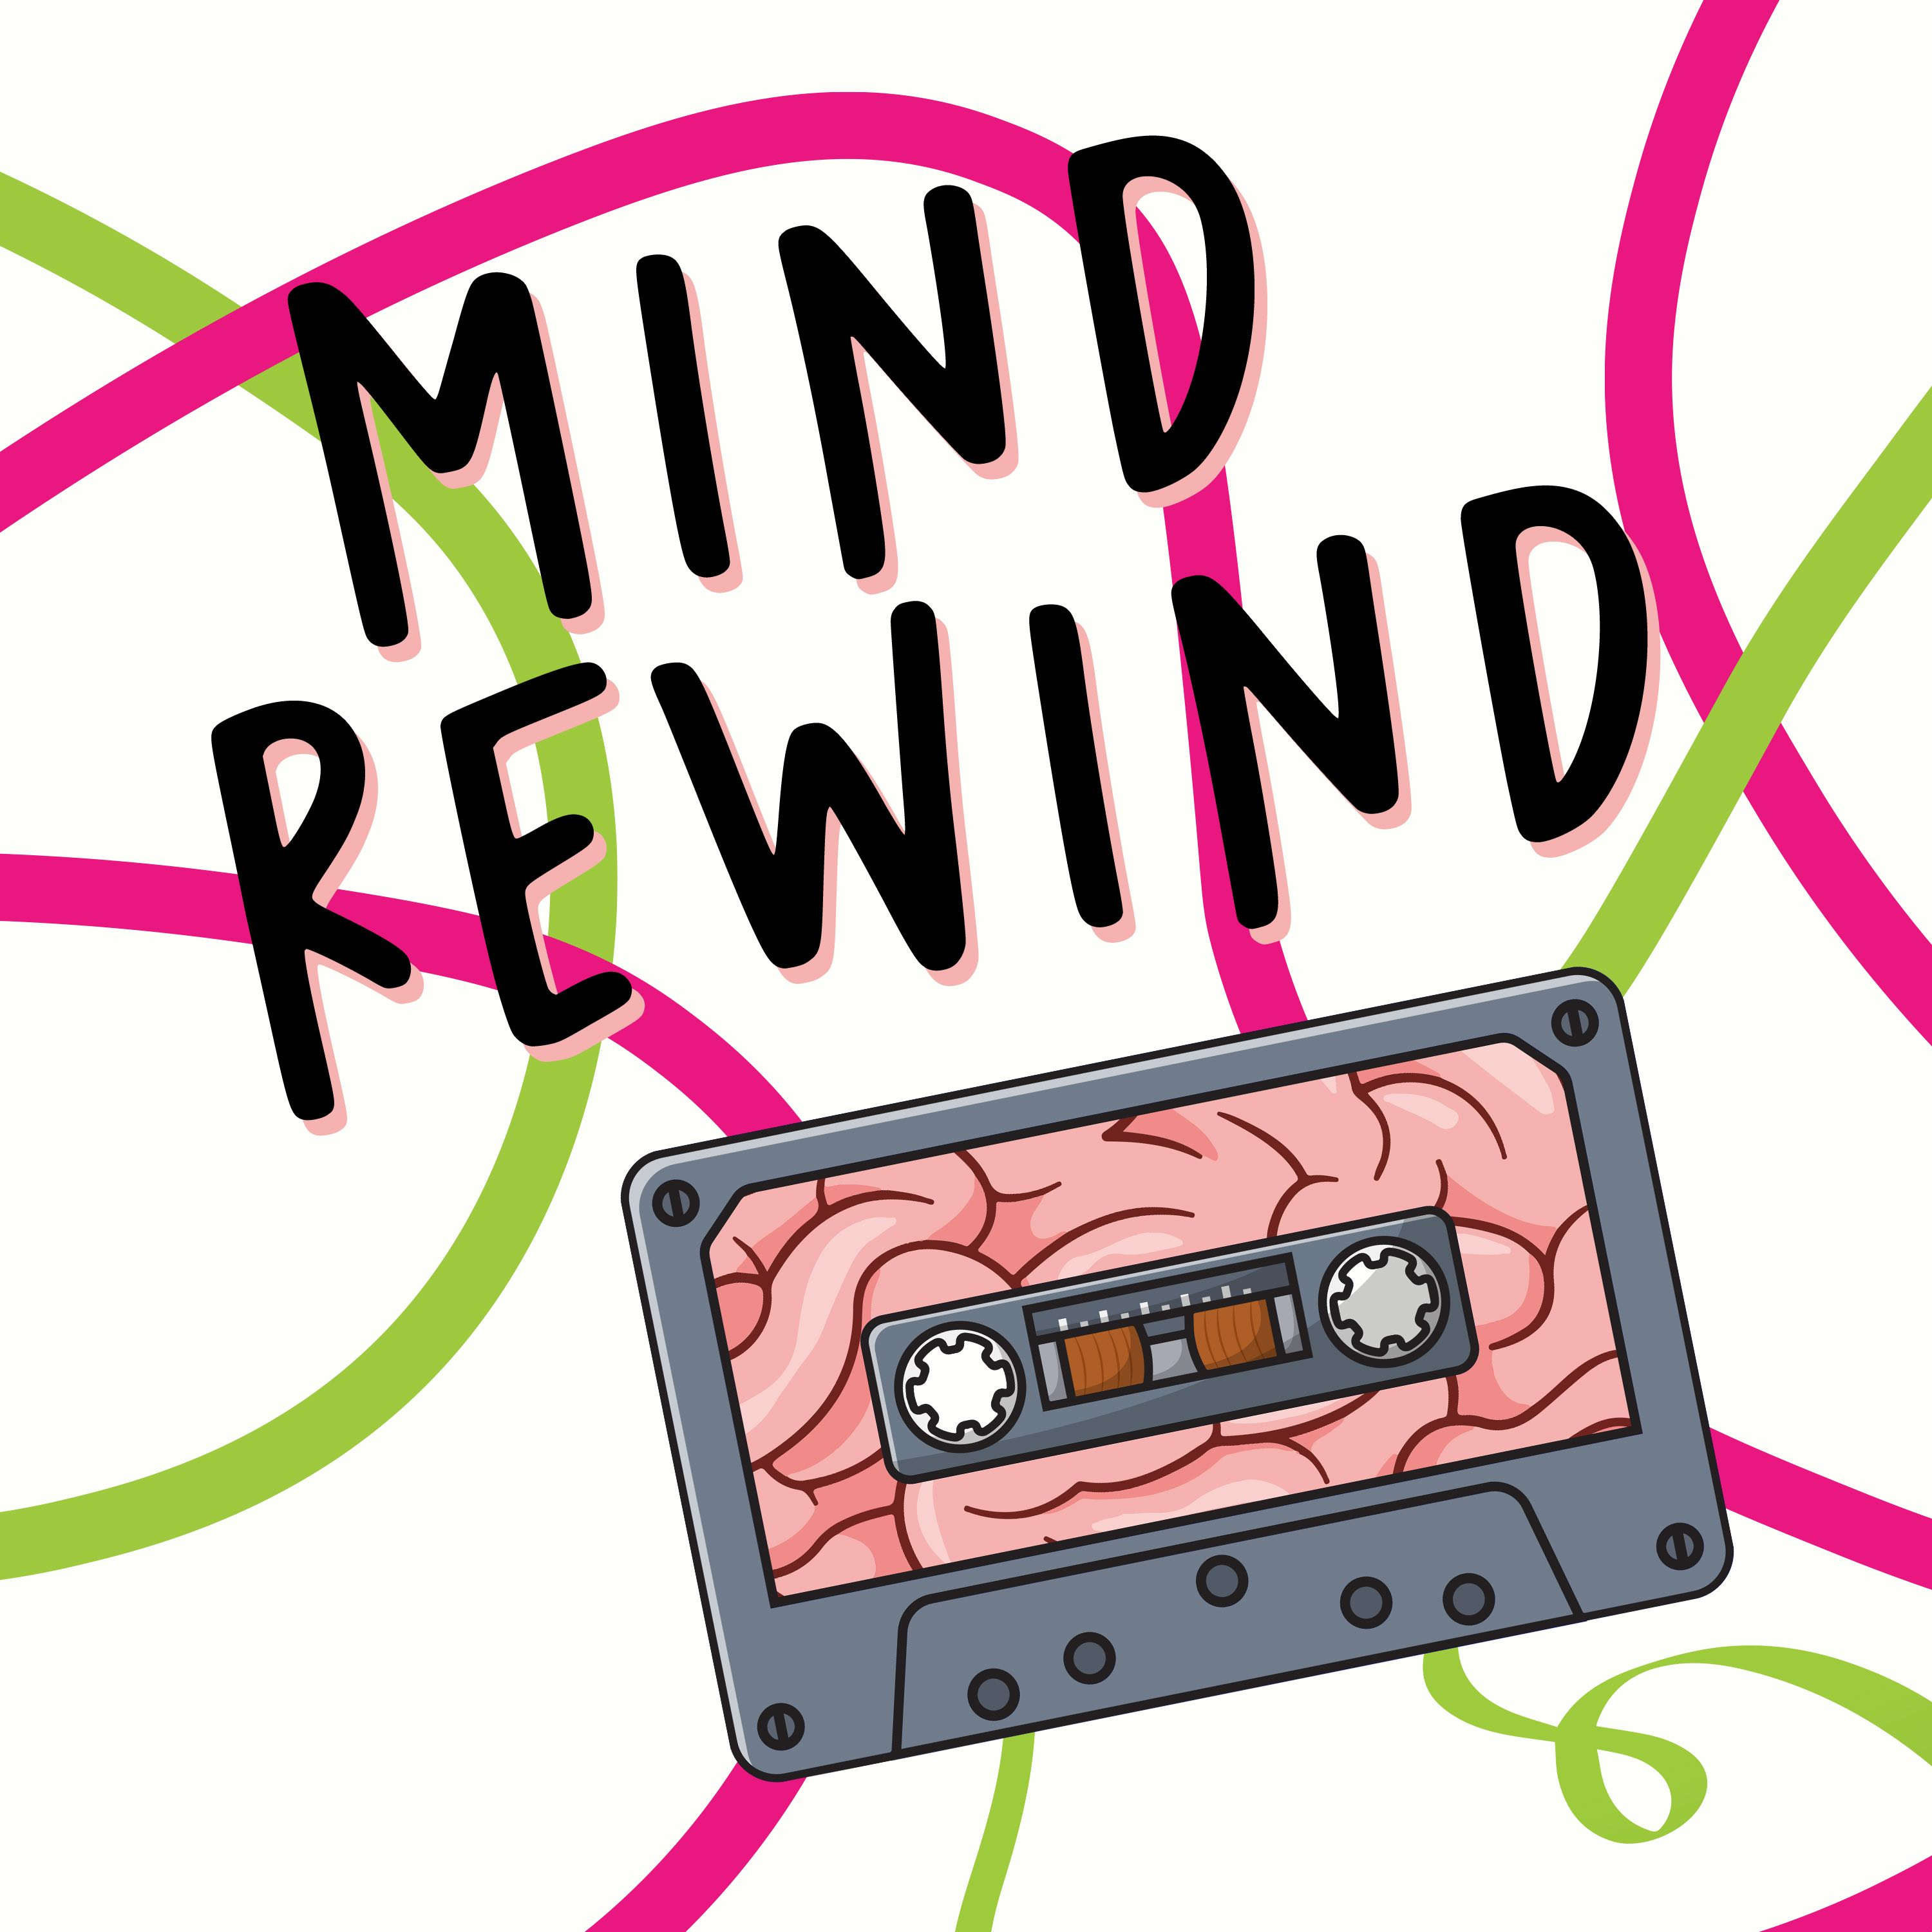 Mind Rewind